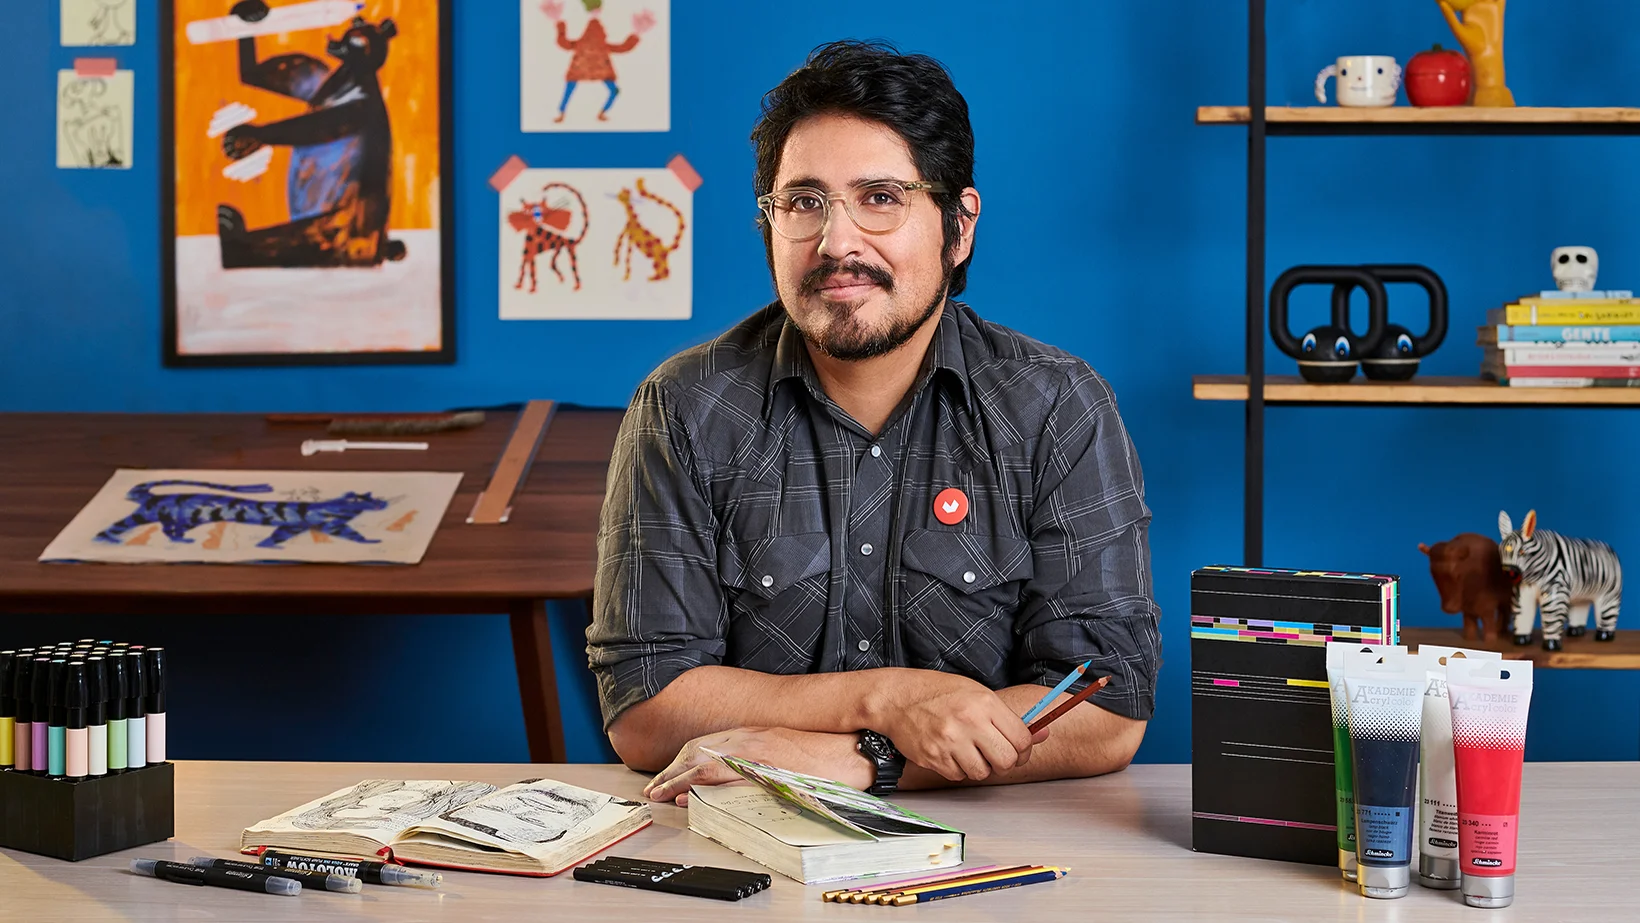 Endryxz - Santiago,: Ilustrador Profesional hace clases de Dibujo